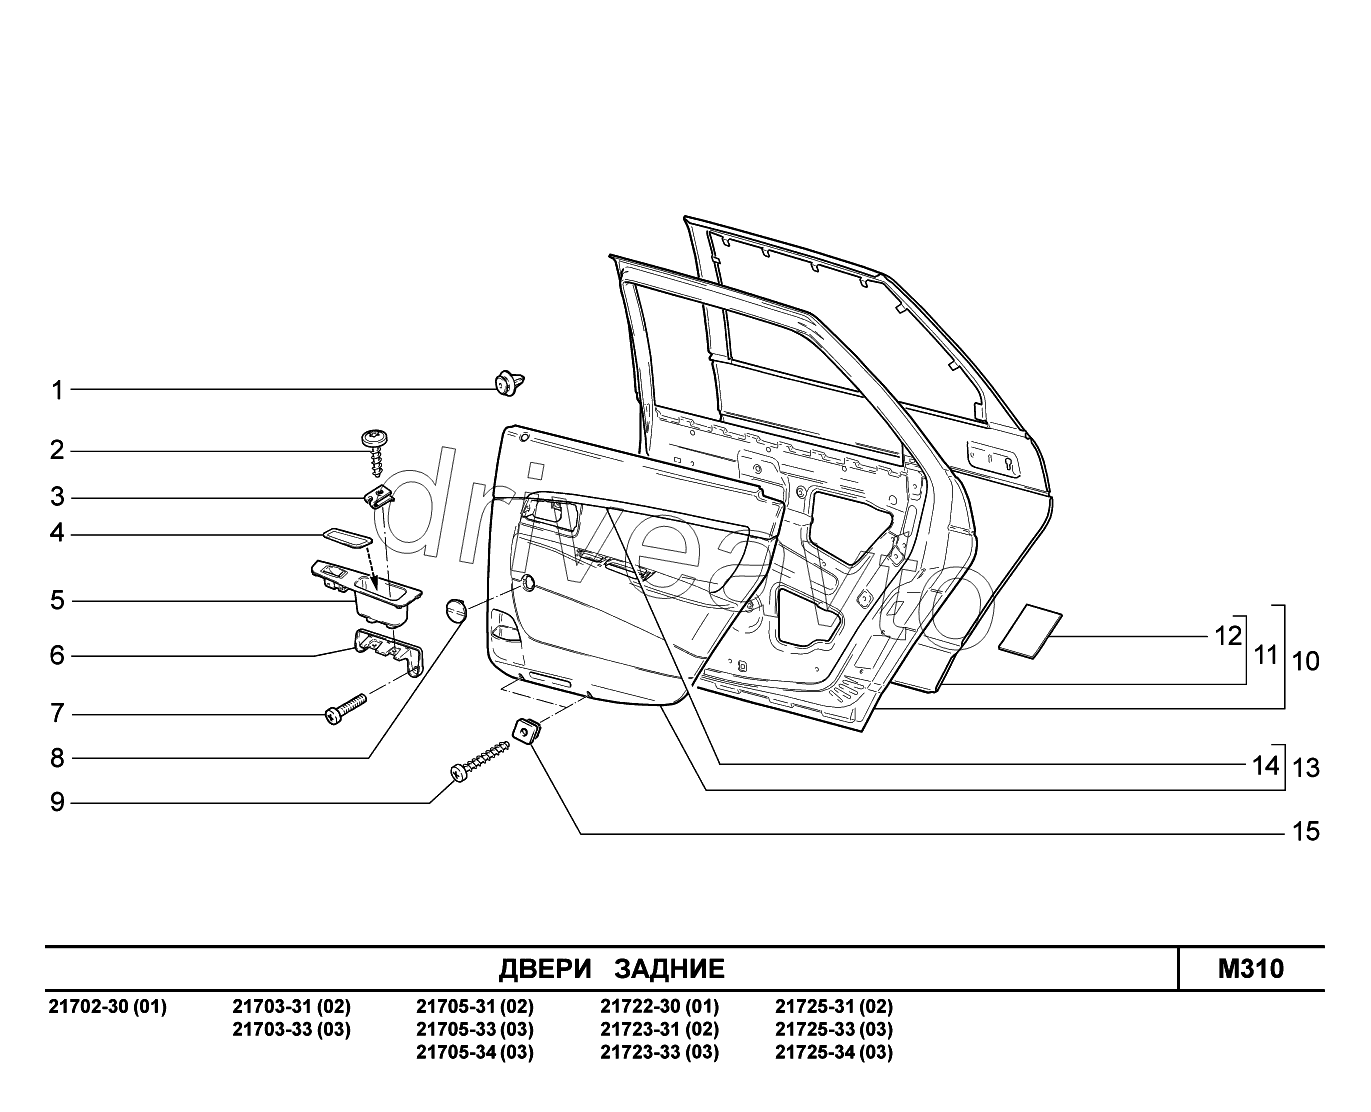 M310. Двери задние